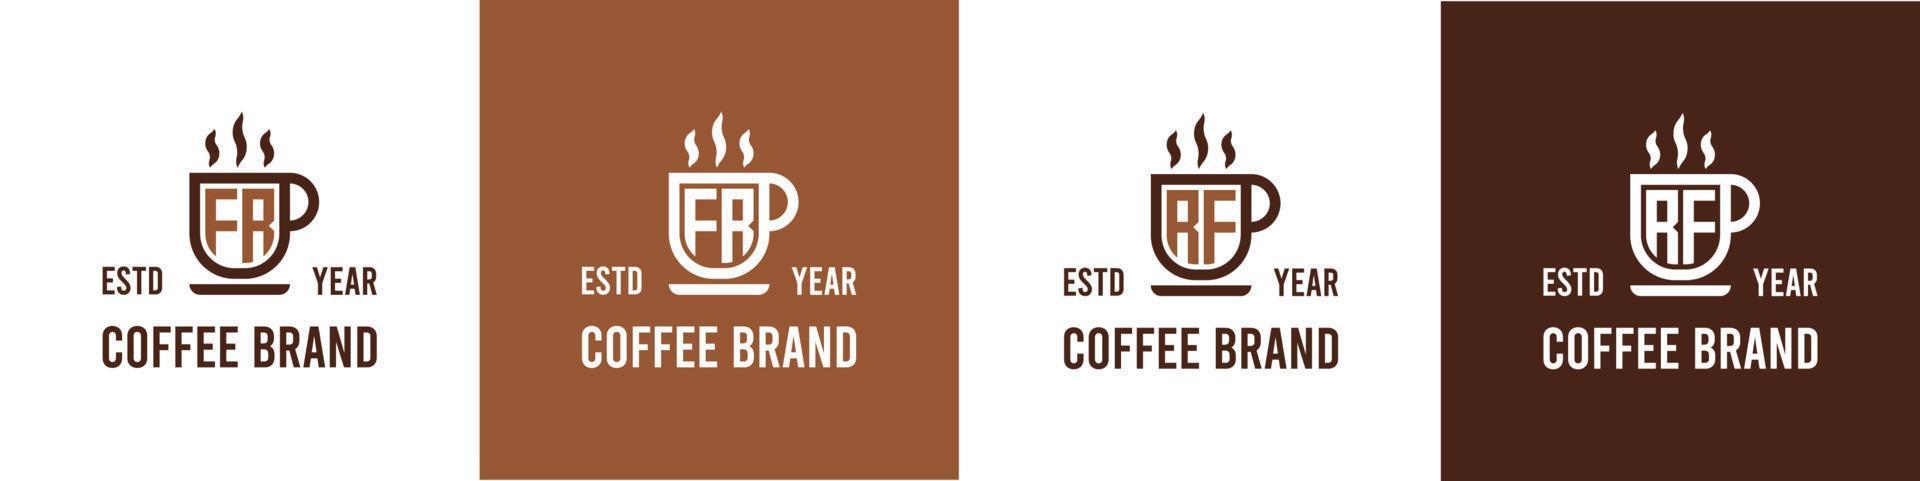 letra fr y rf café logo, adecuado para ninguna negocio relacionado a café, té, o otro con fr o rf iniciales. vector